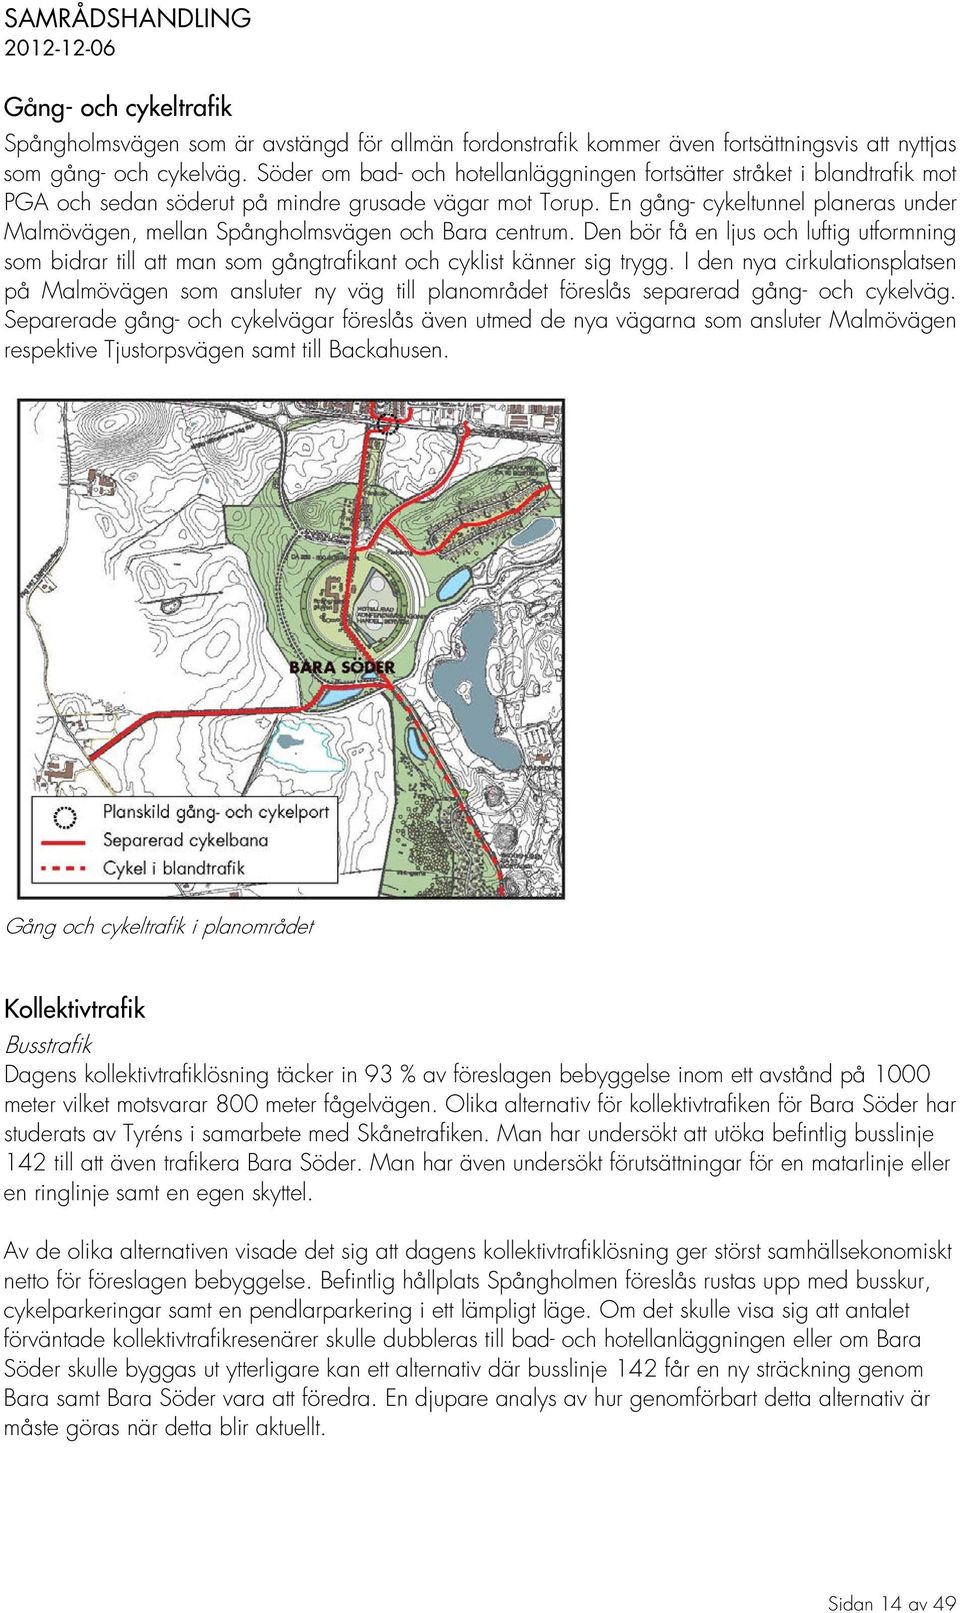 En gång- cykeltunnel planeras under Malmövägen, mellan Spångholmsvägen och Bara centrum.